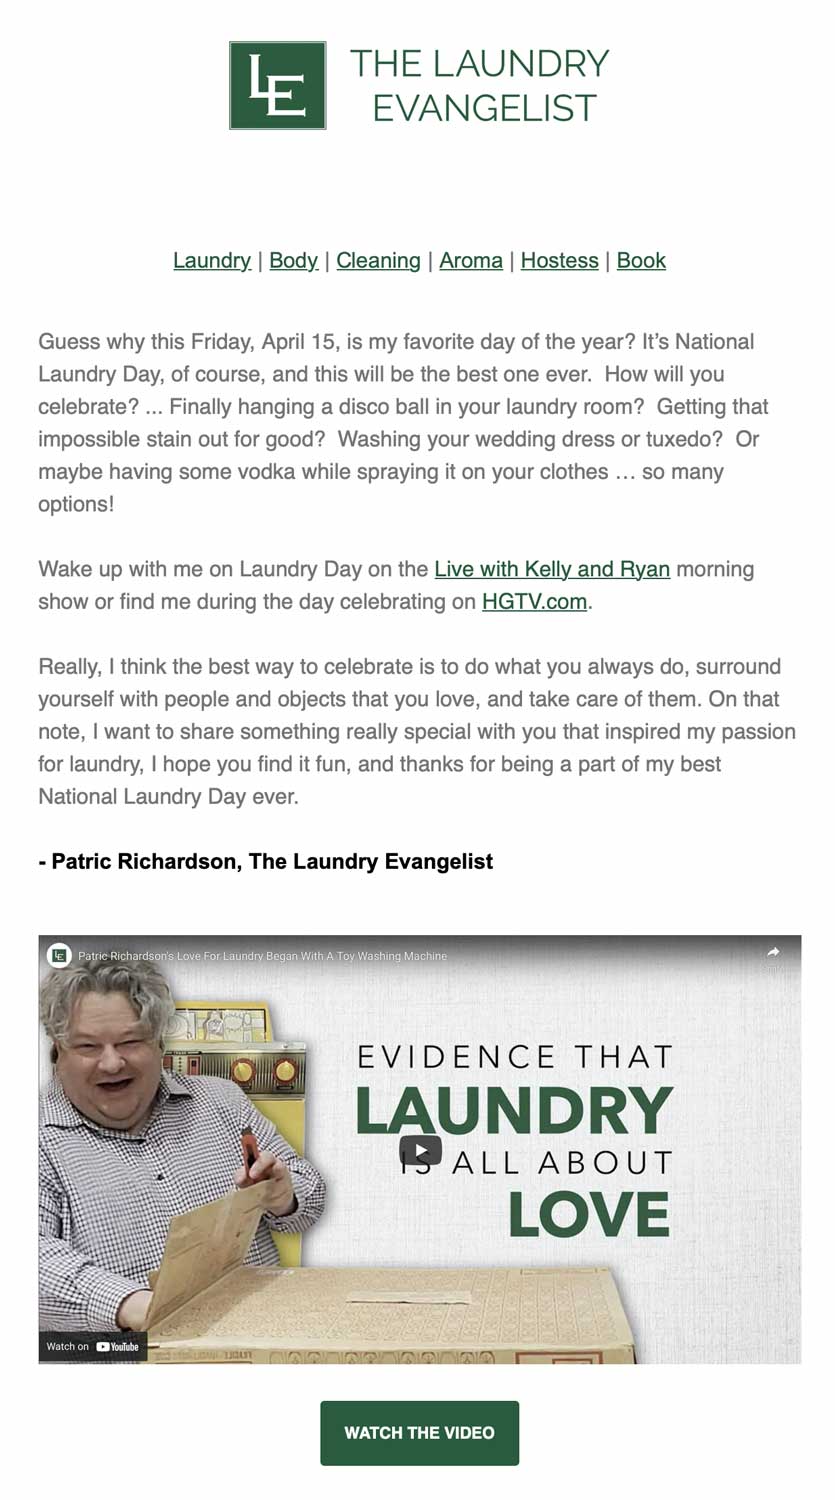 E-Newsletter Digital Marketing for the Laundry Evangelist